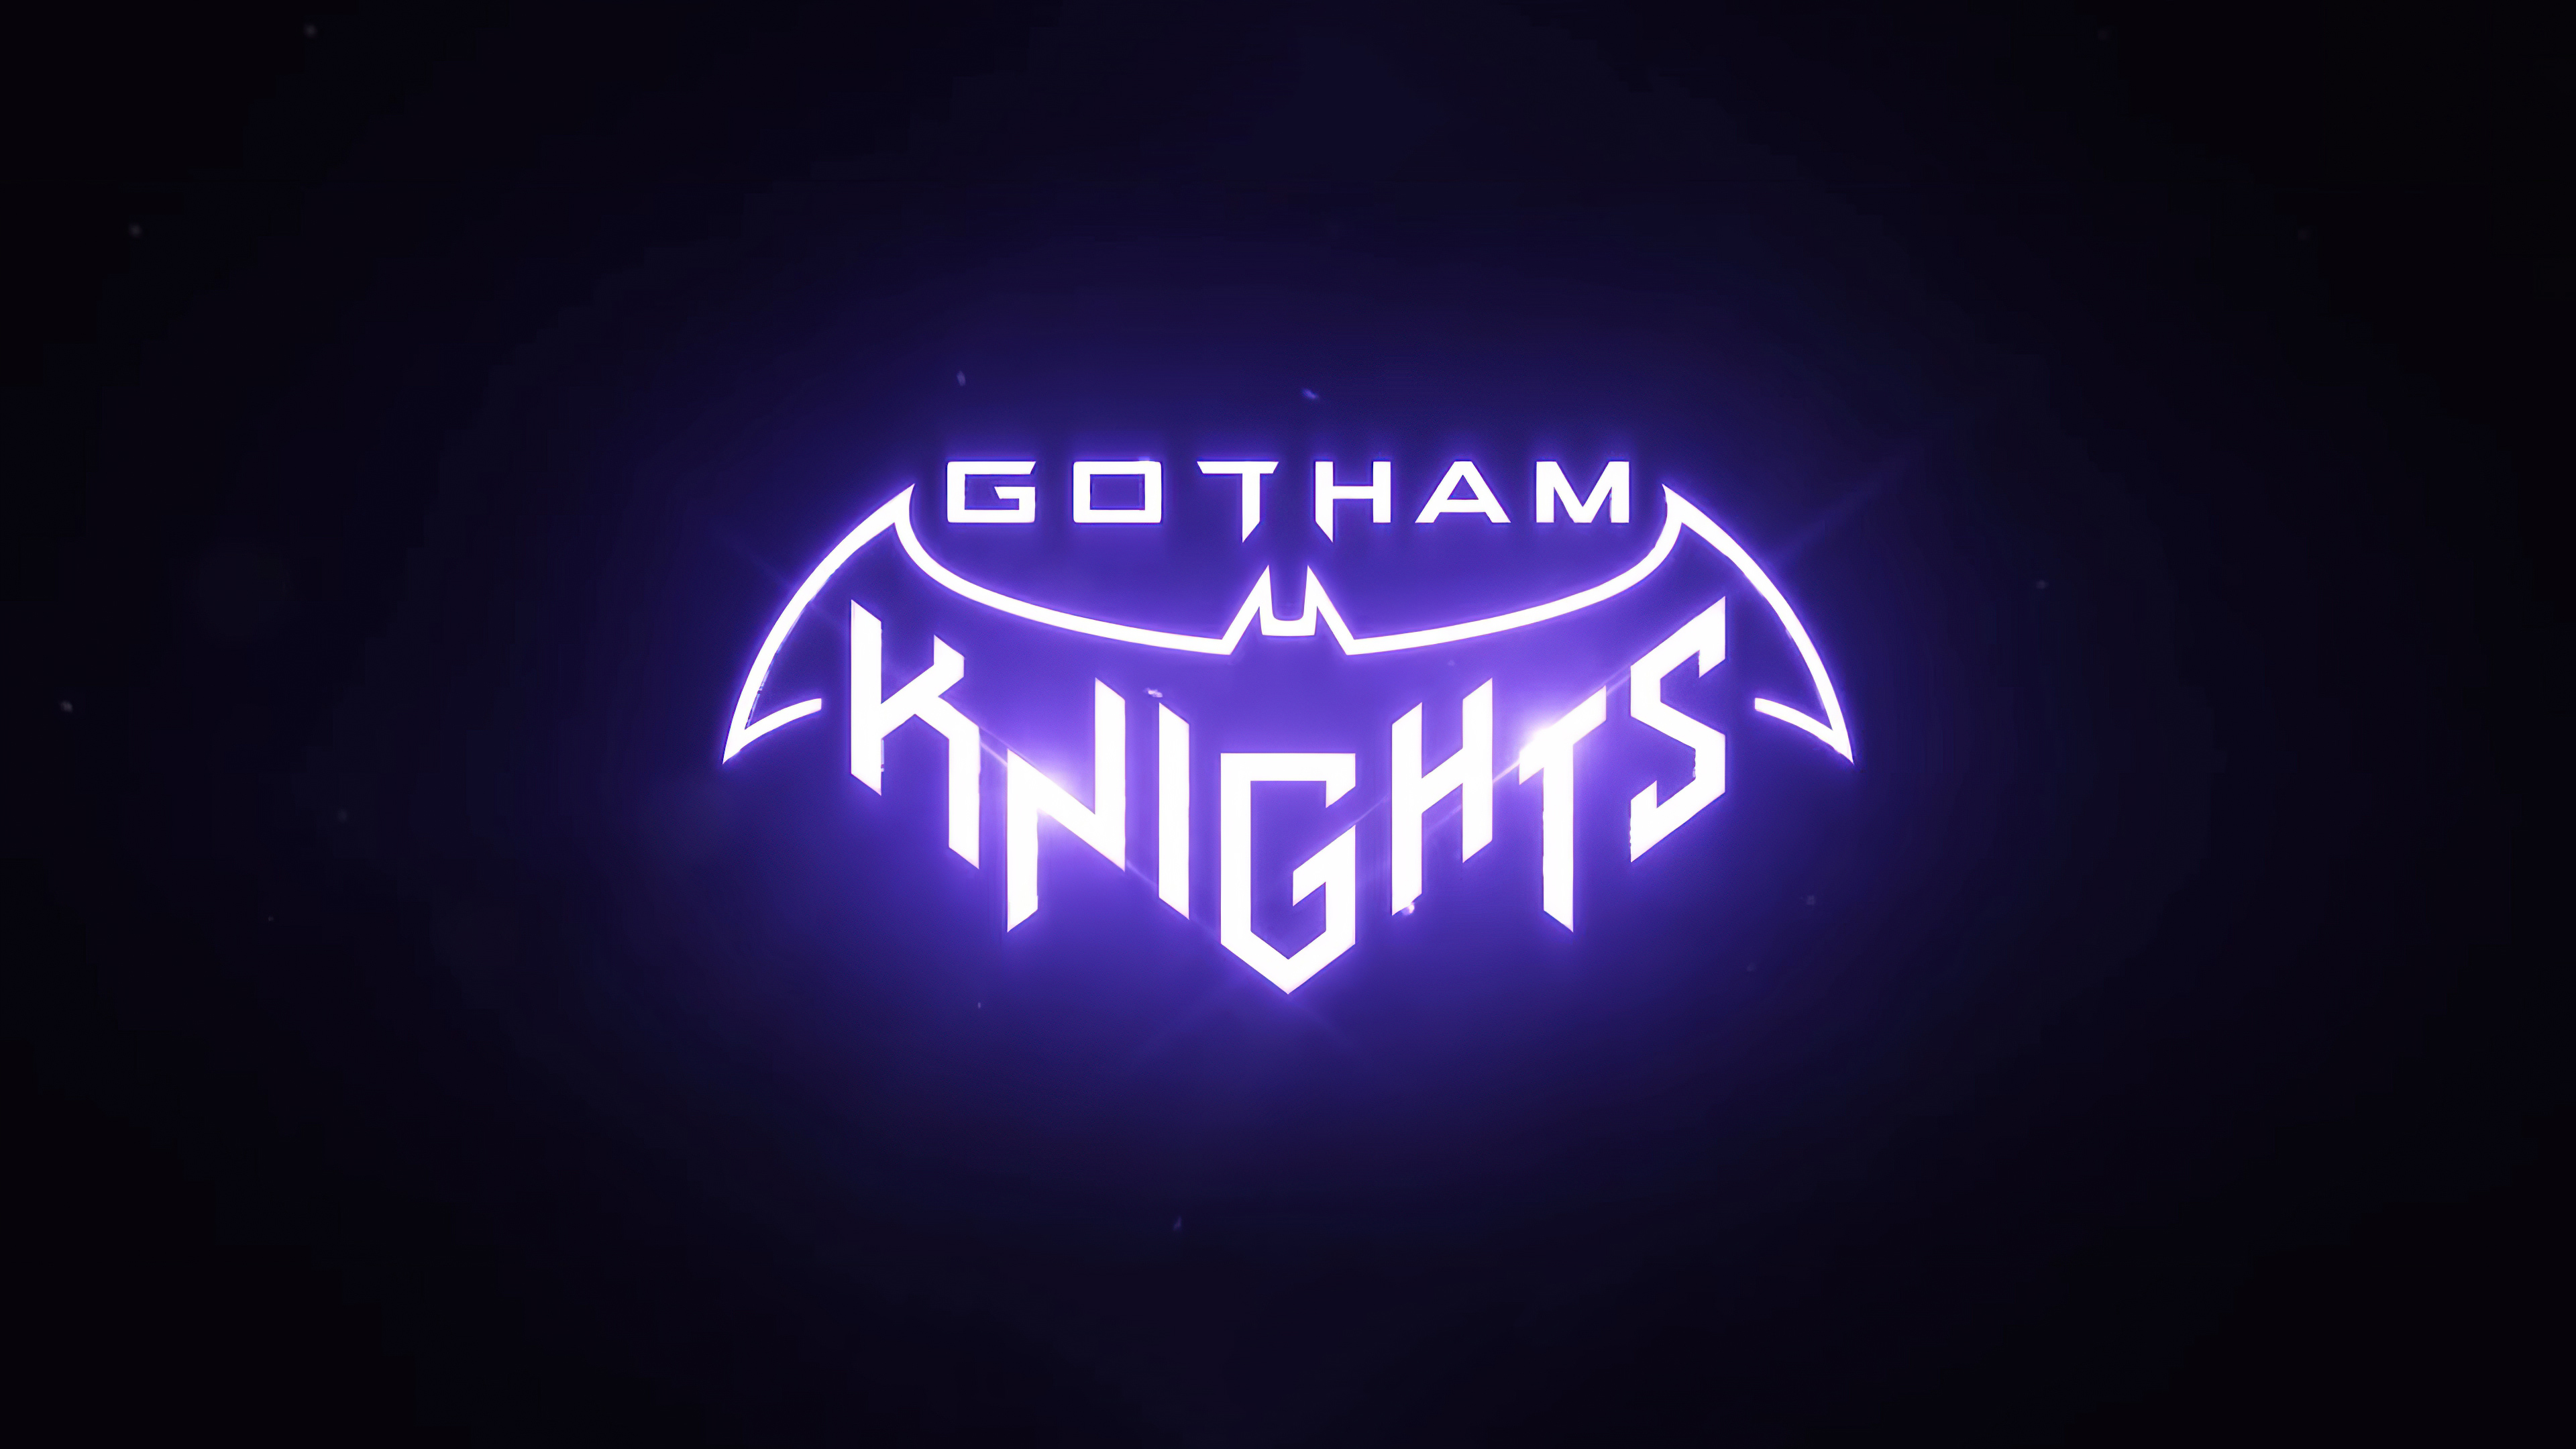 gotham knights download